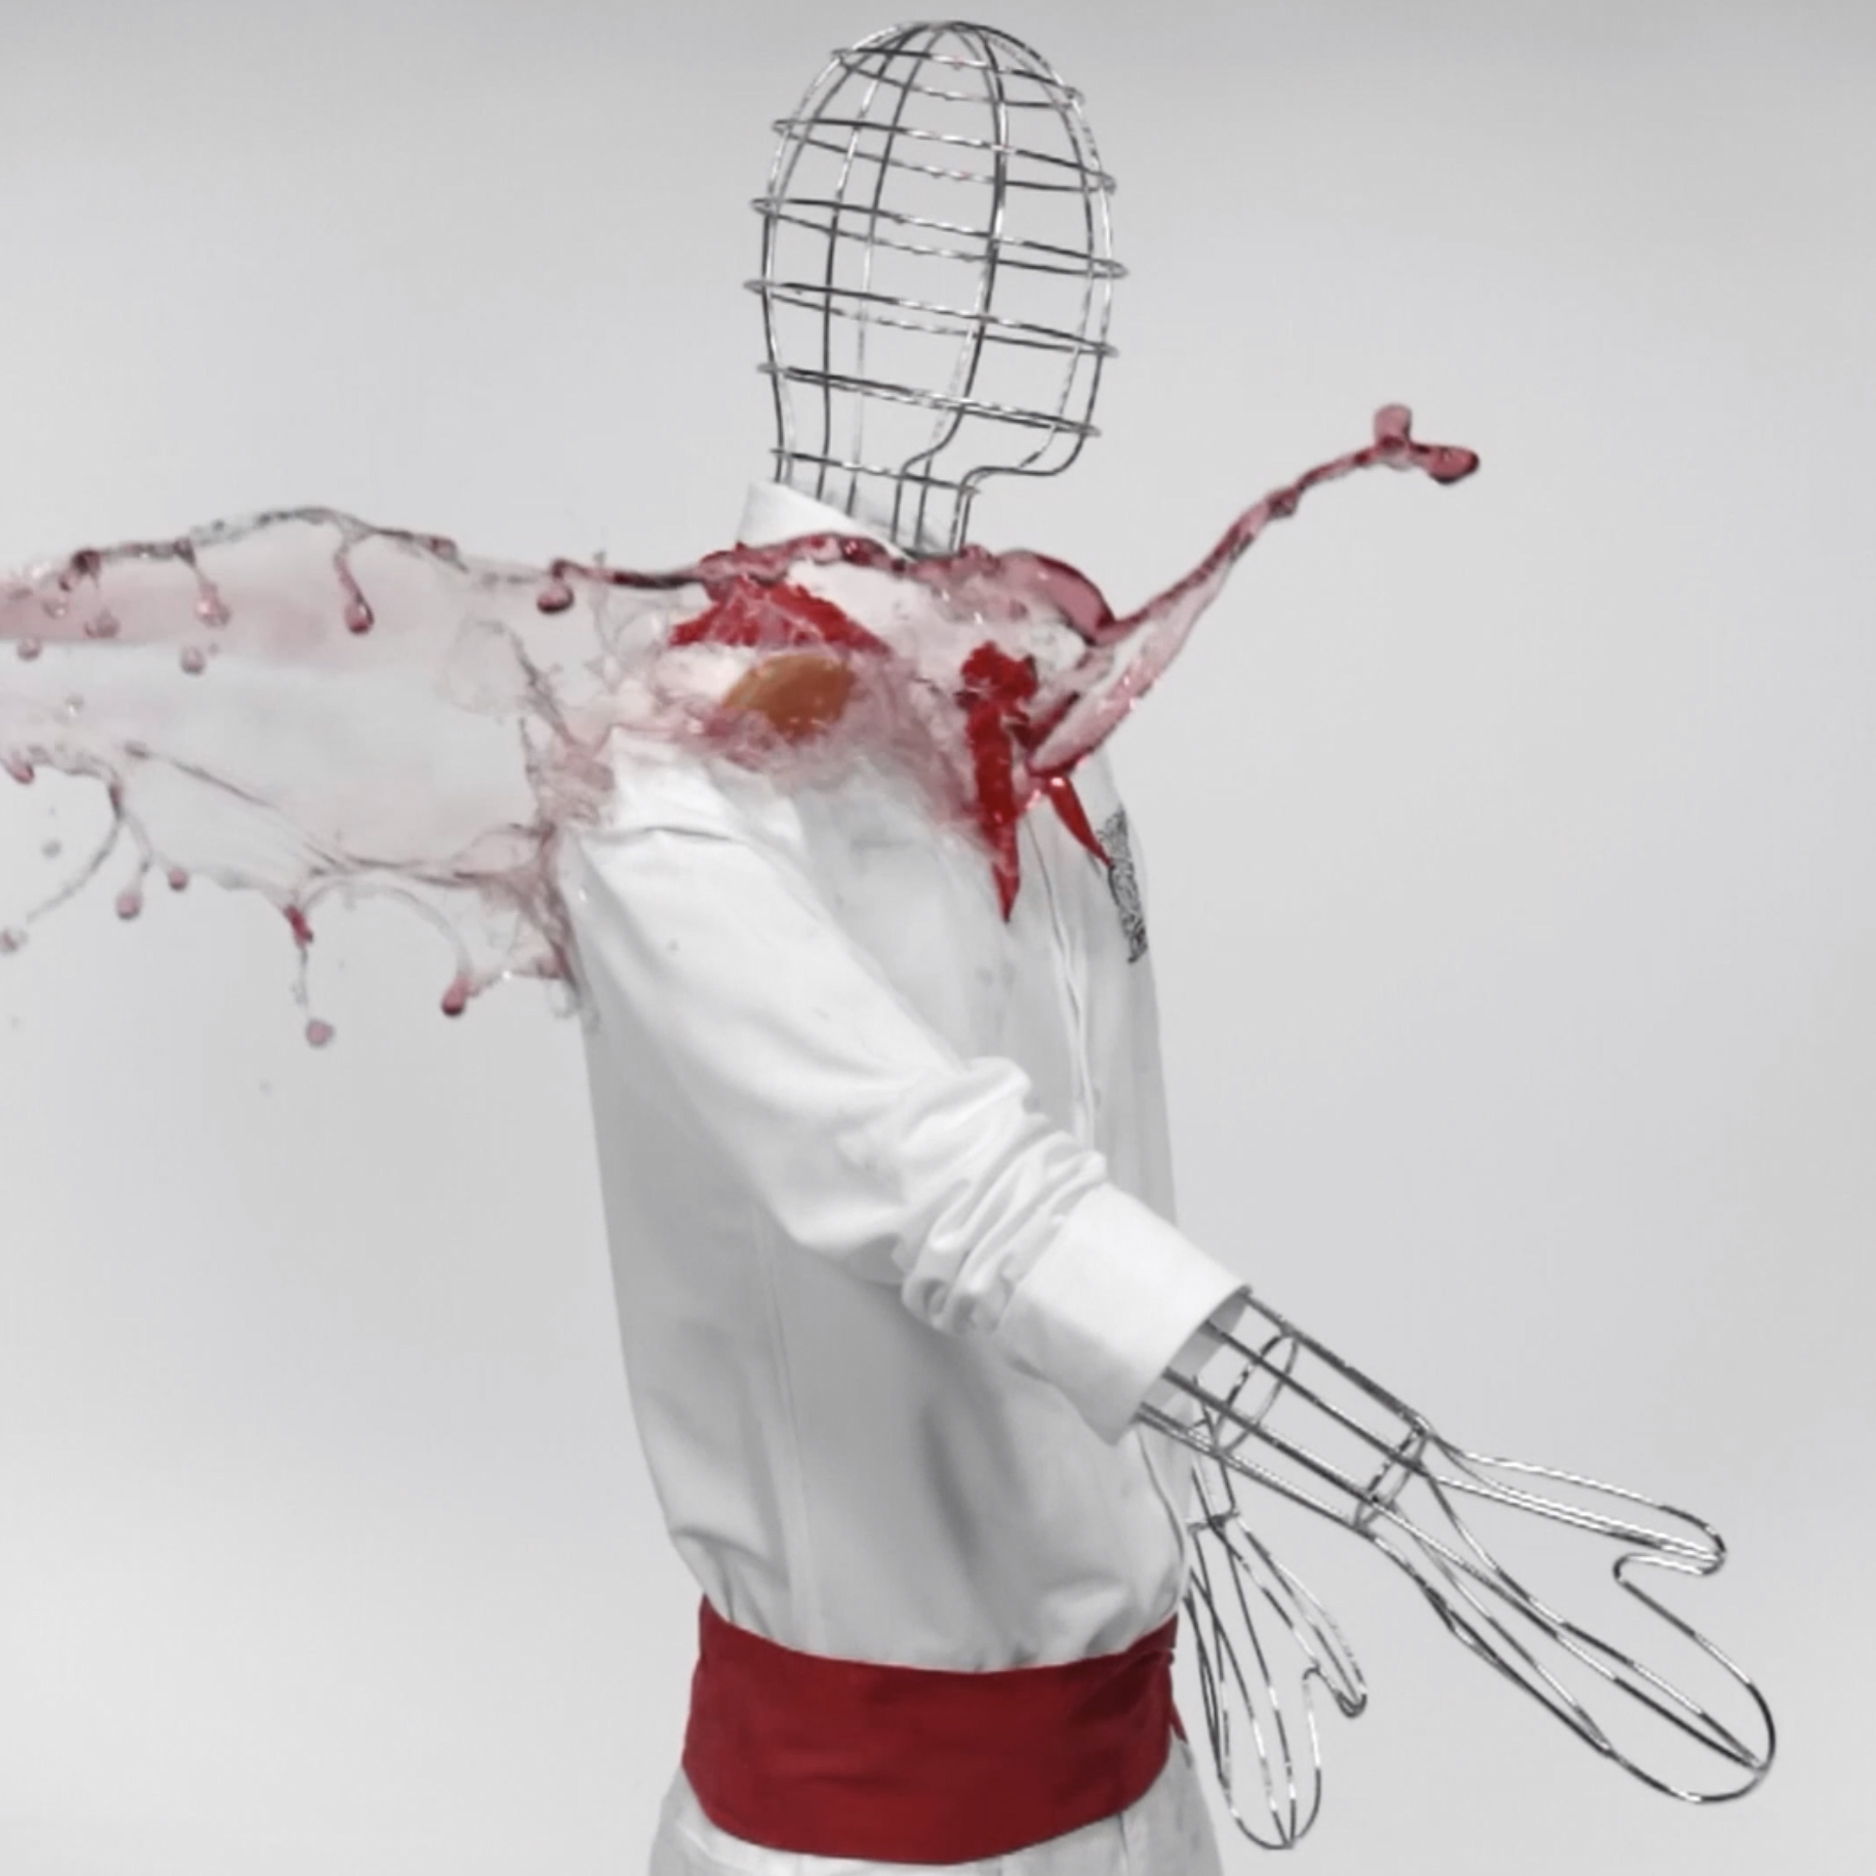 Un chorro de vino resbala sobre el traje especial de pamplonica que repele líquidos diseñado por Aracnofobia